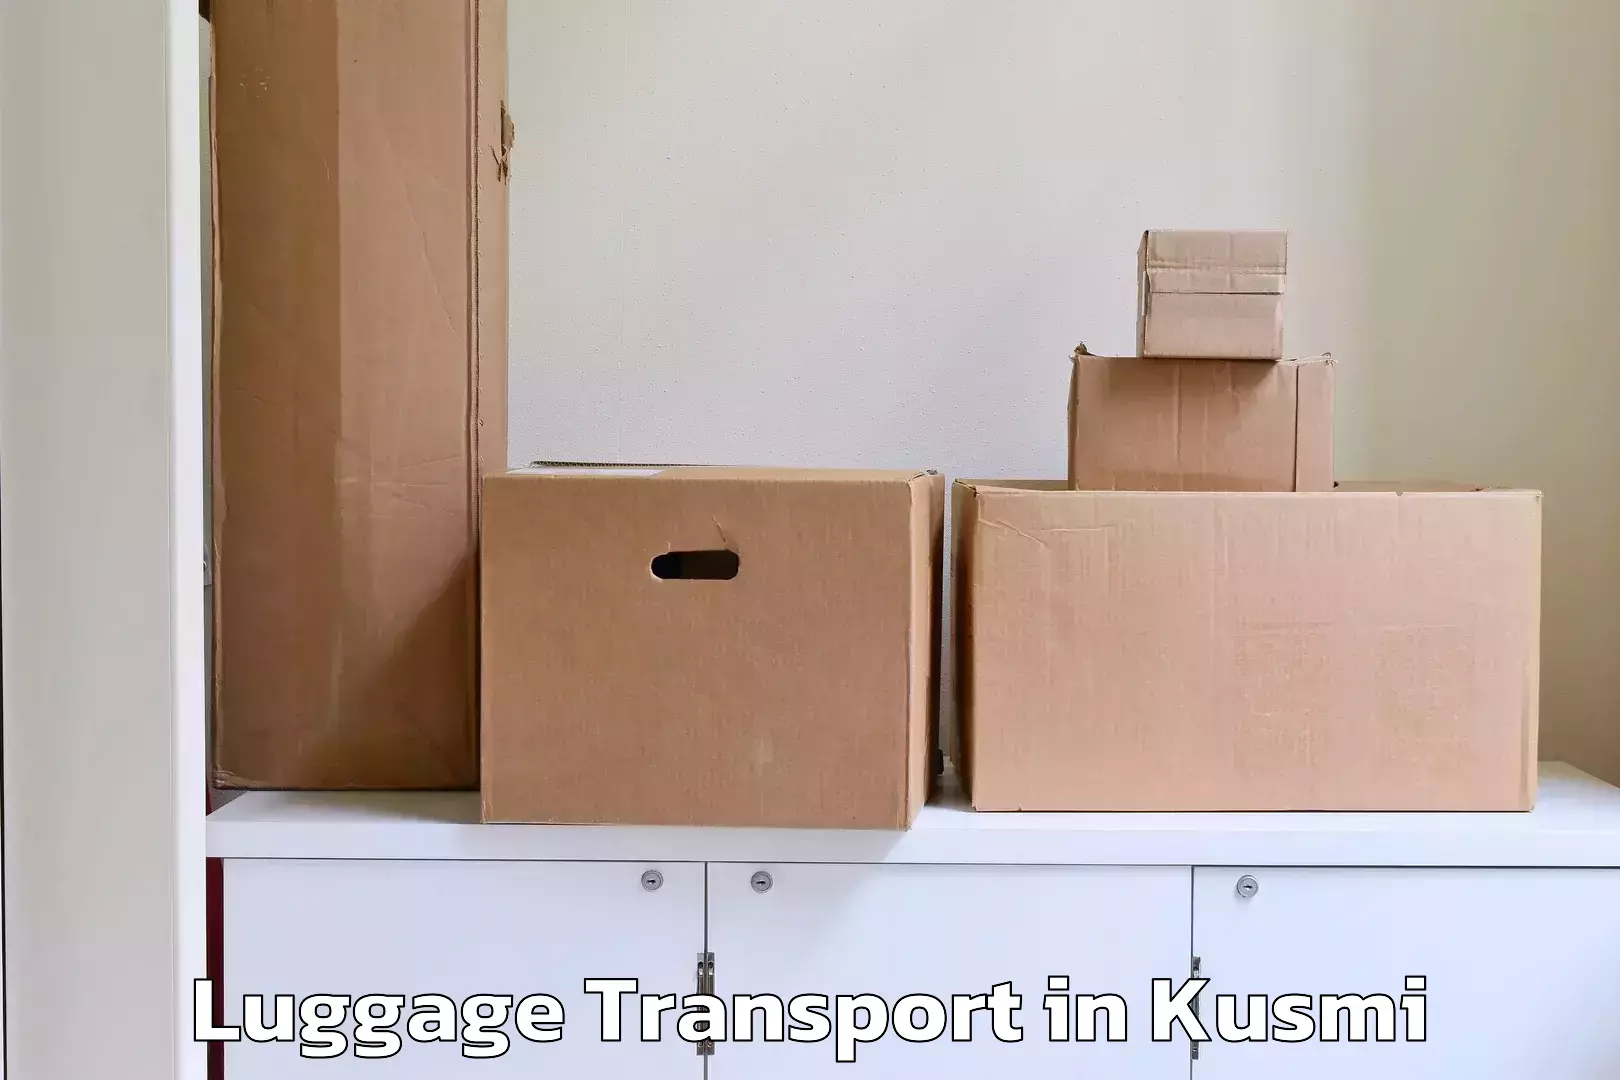 Corporate baggage transport in Kusmi